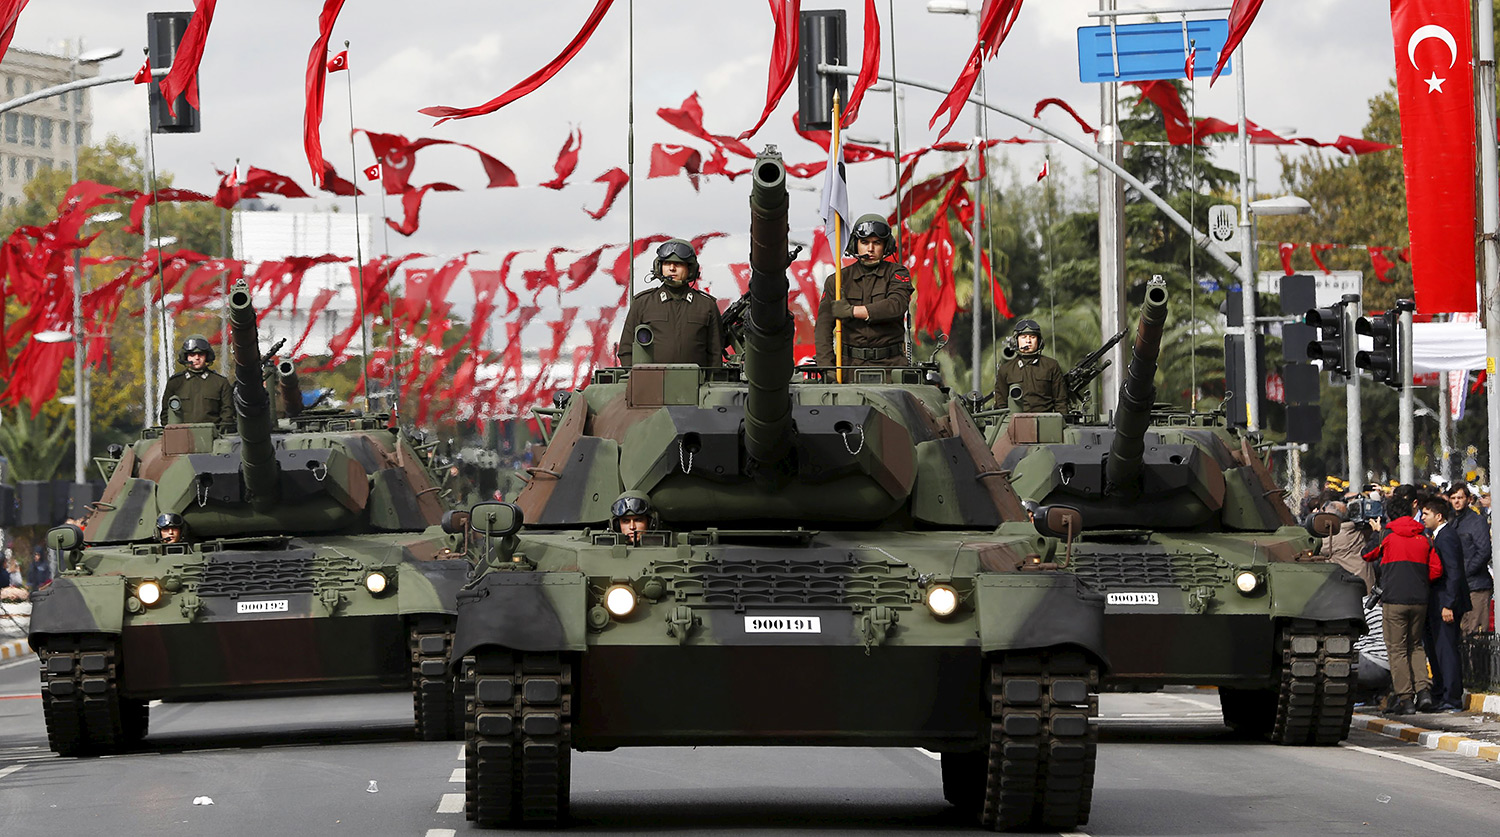 Թուրքիան ավելացրել է ռազմական արտադրանքի արտահանումը դեպի Ադրբեջան